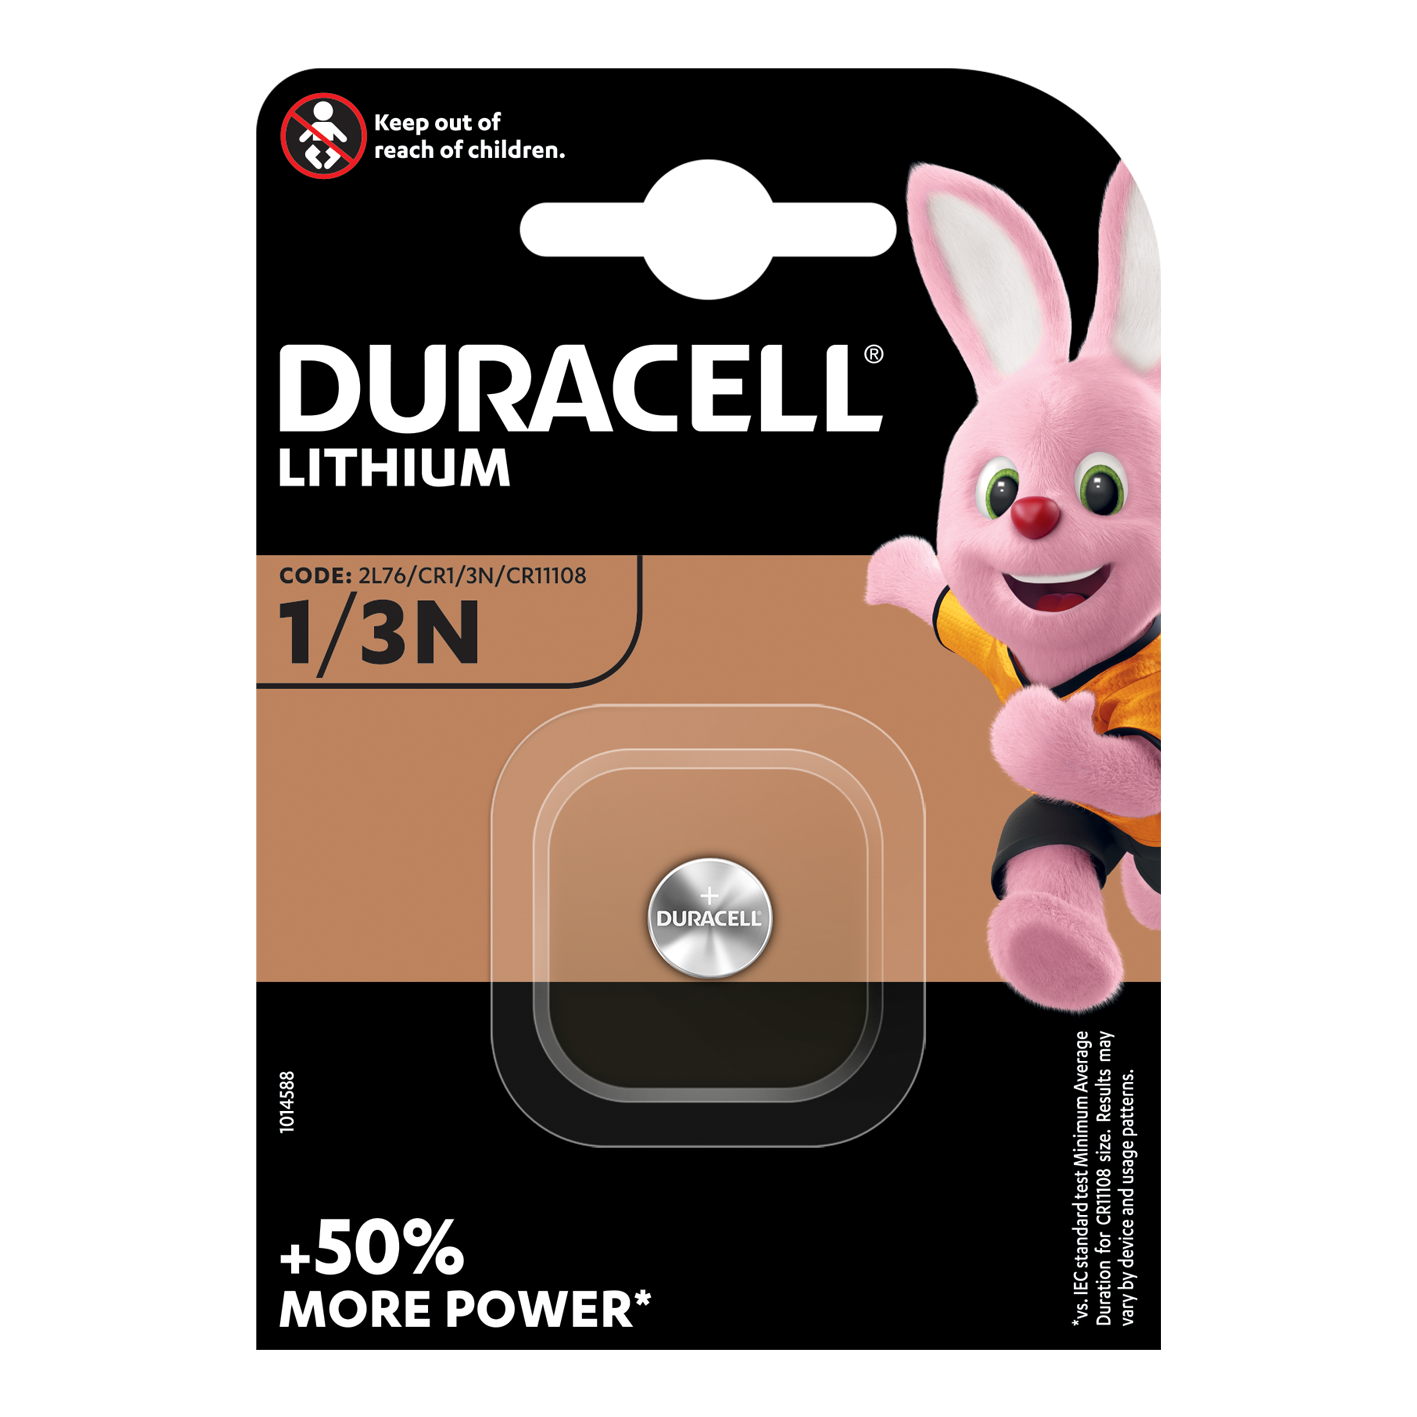 Duracell DL1/3N (CR1/3N) 3V Litio, paquete de 1